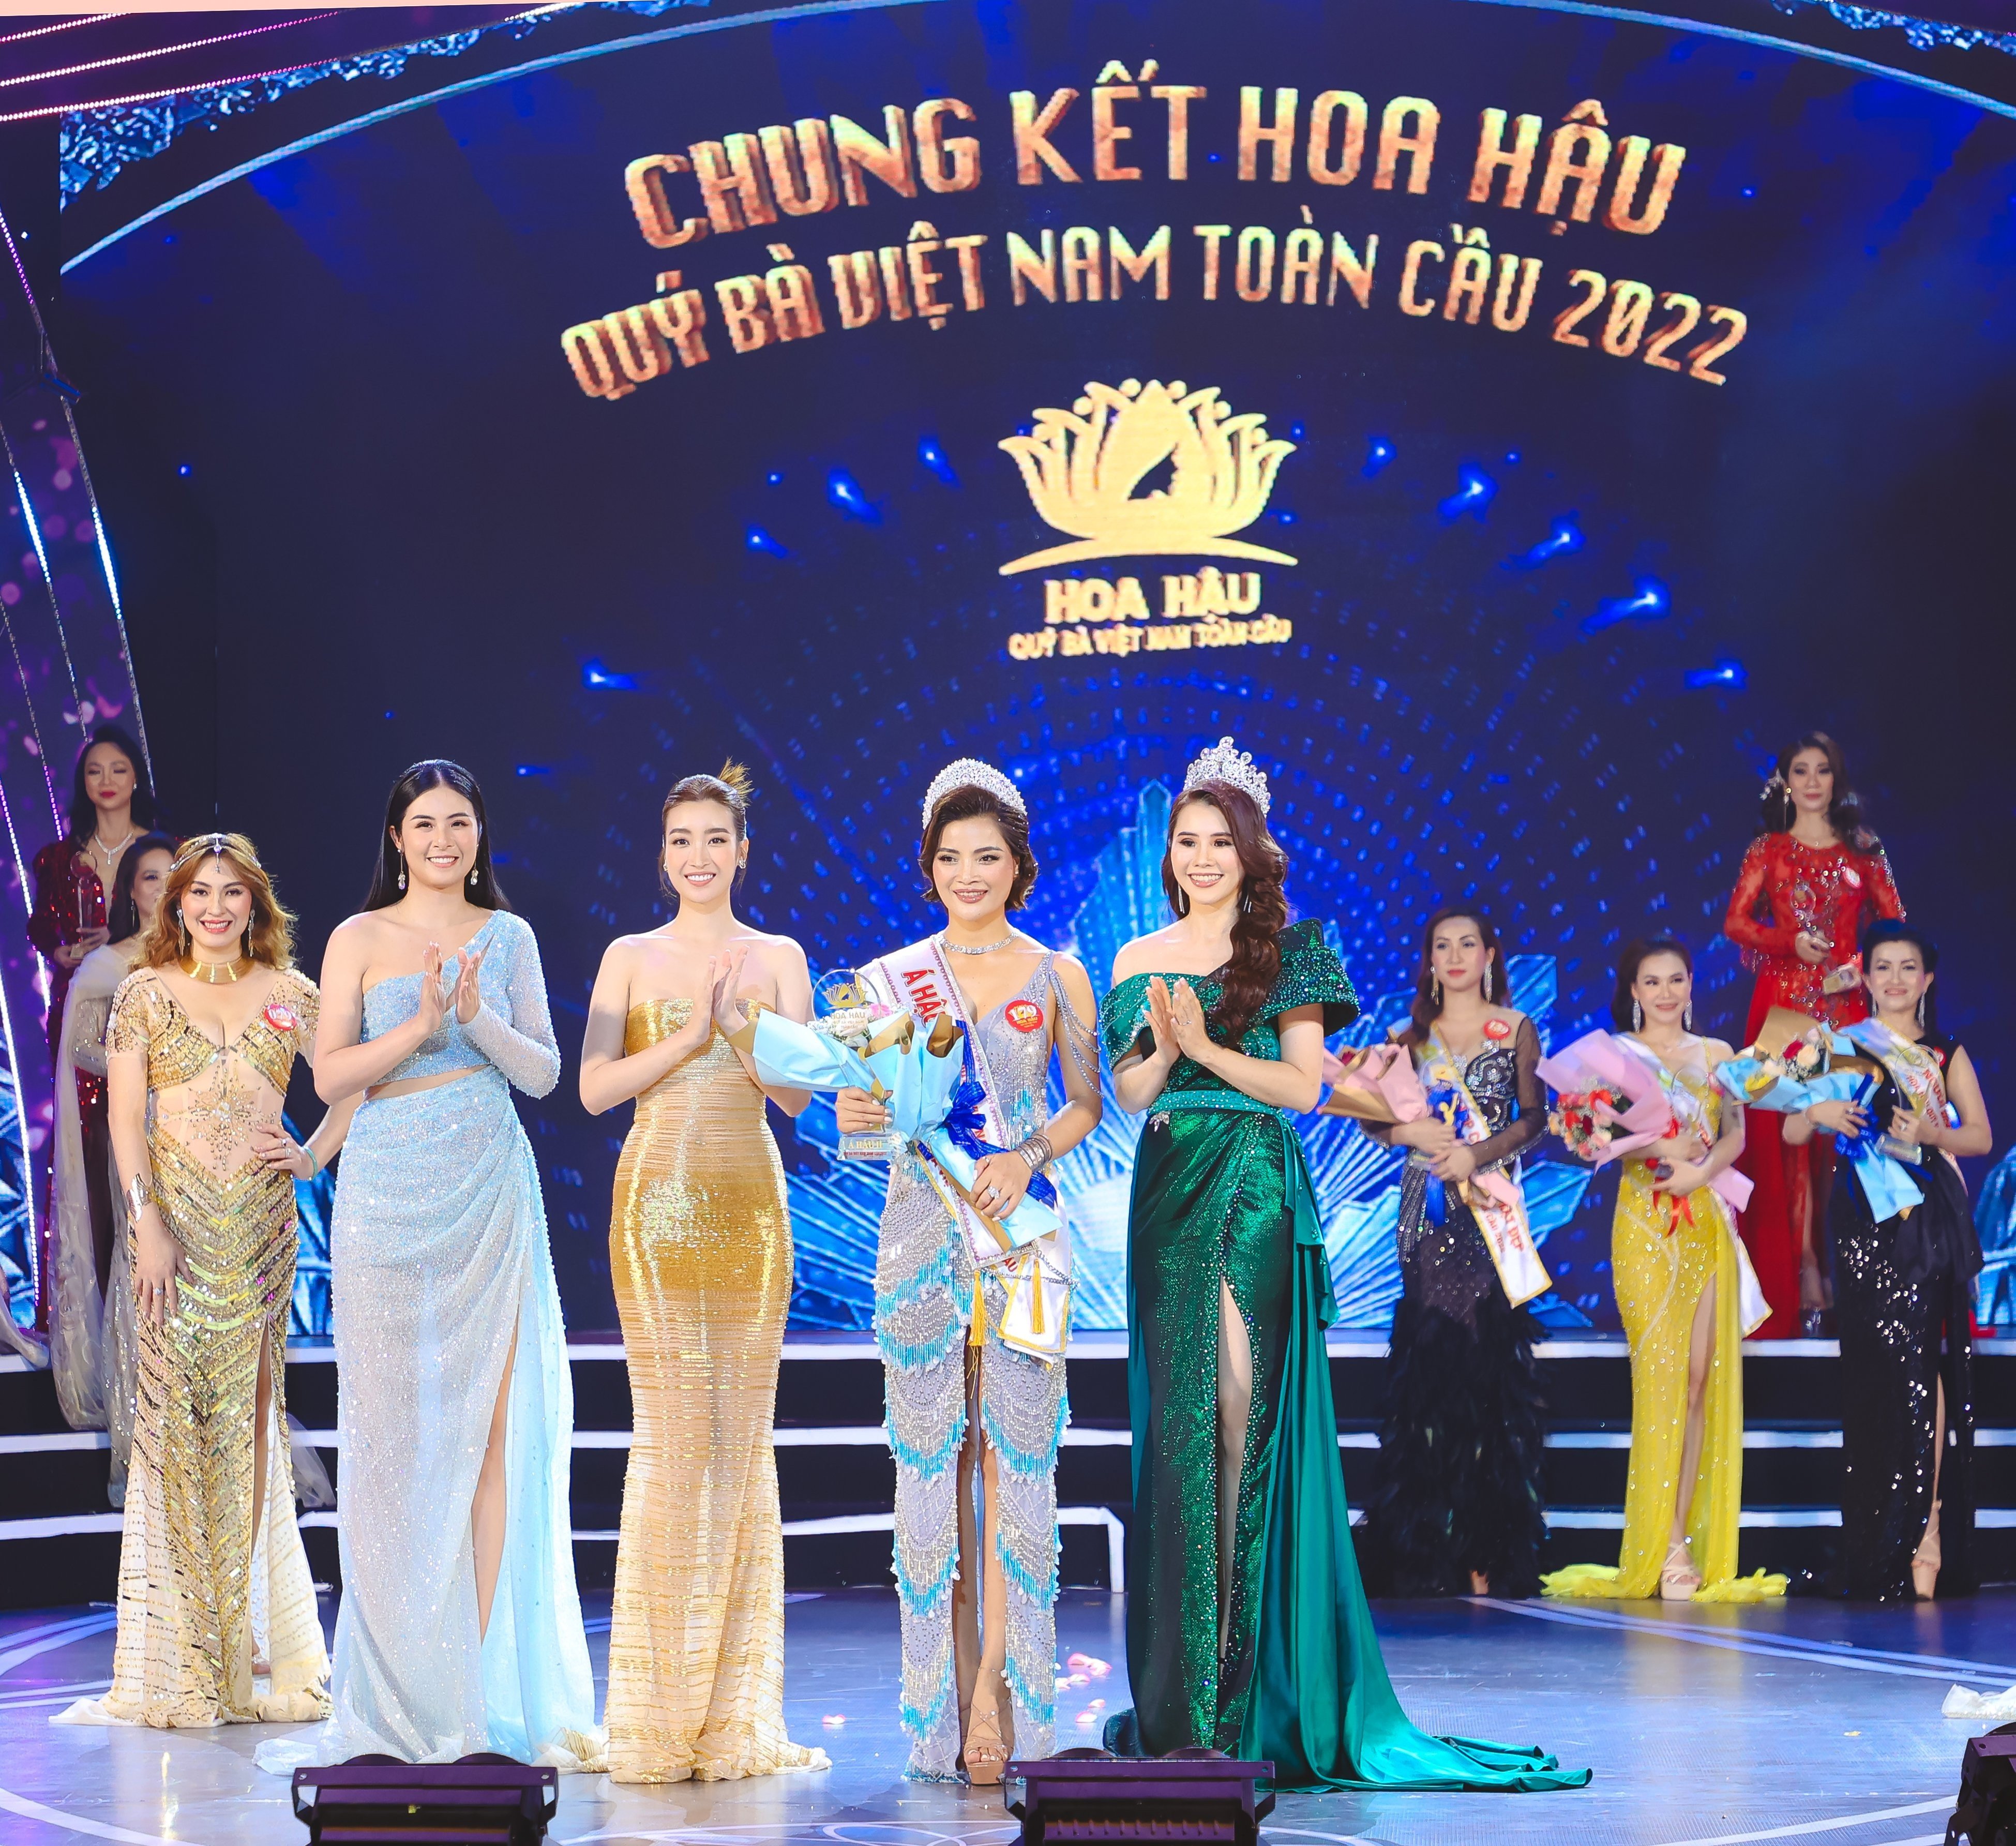 Lời cảm ơn sâu sắc từ Á hậu Hà Linh gửi đến BTC Hoa hậu Quý bà Việt Nam Toàn cầu 2022